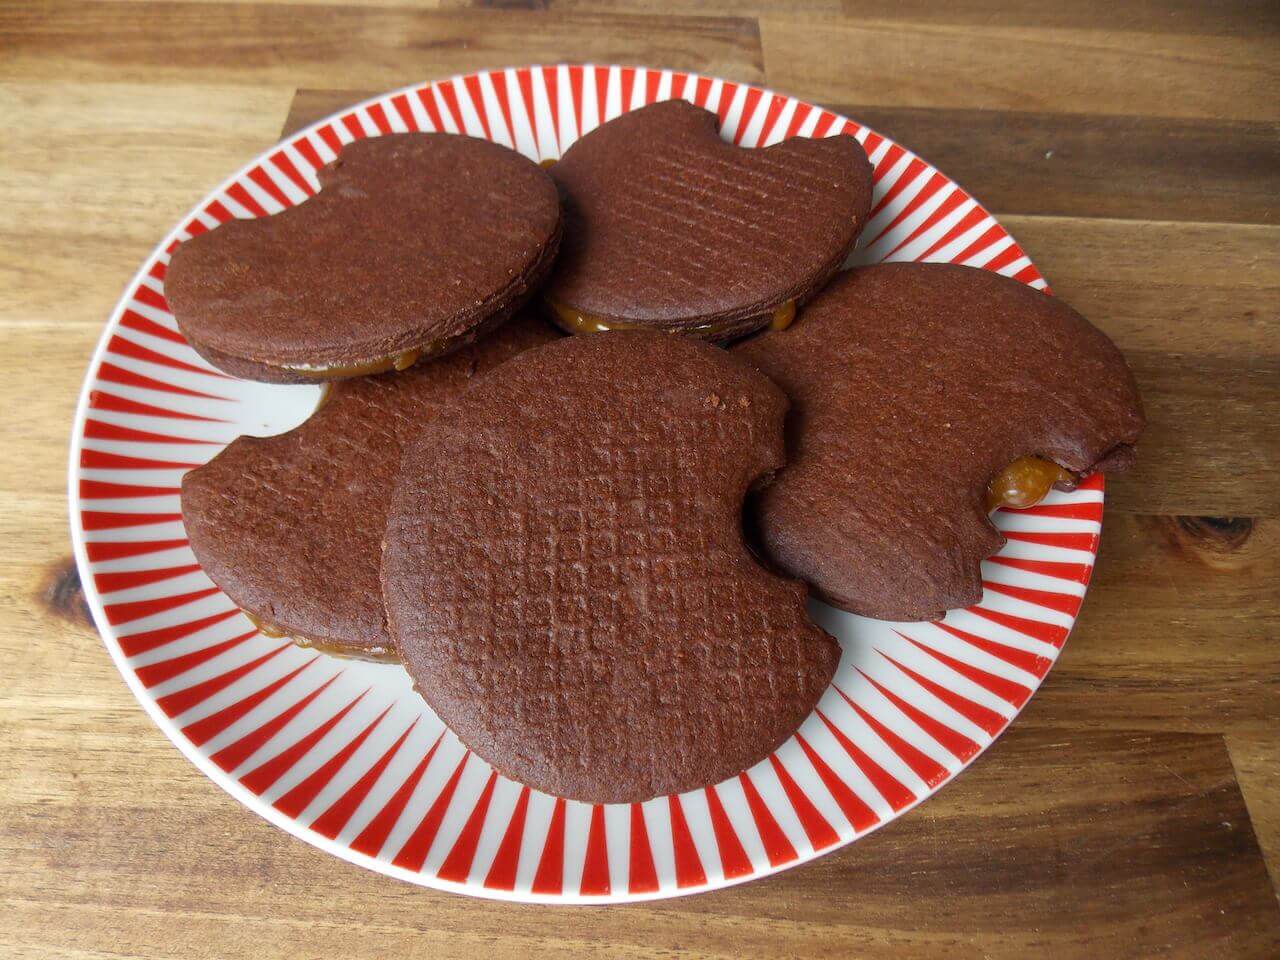 chewy chocolate caramel biscuits - chocolade stroopkoeken - Big Bite Dutch Treats